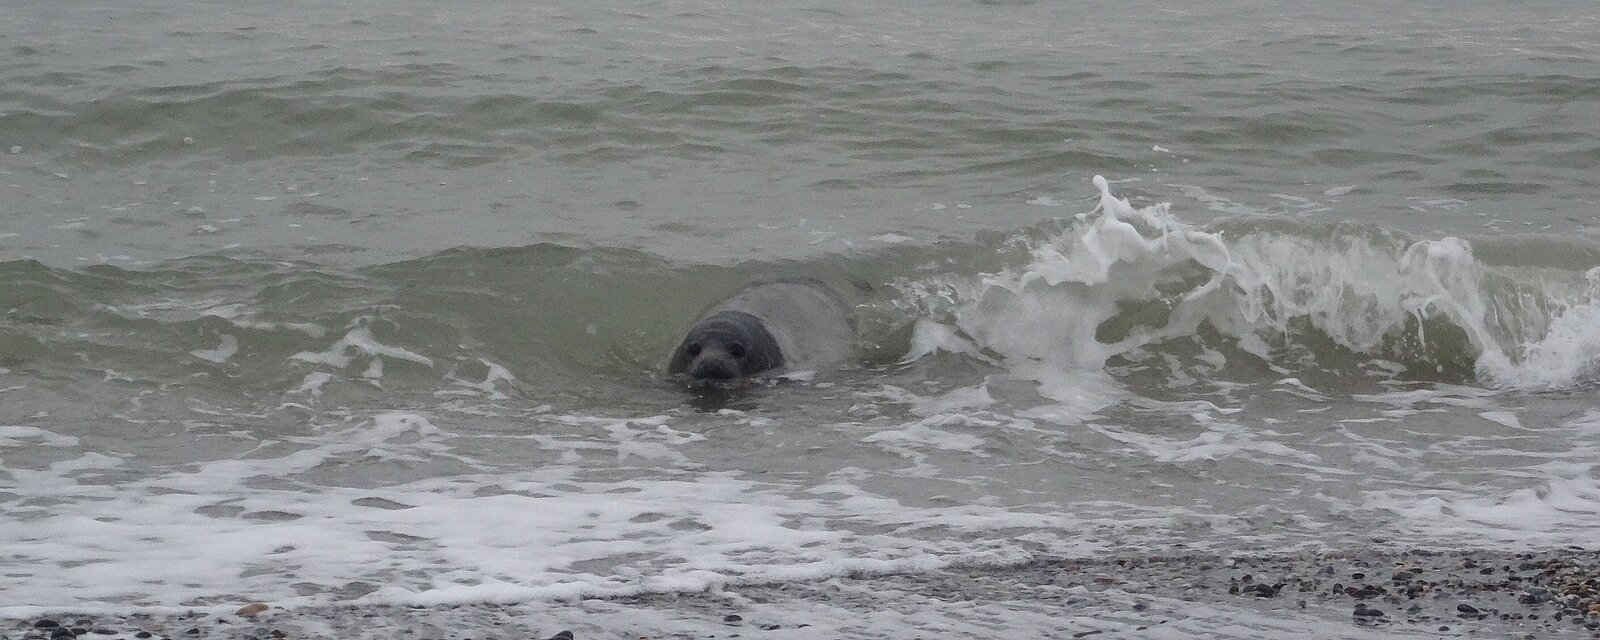 Grey seal at the beach